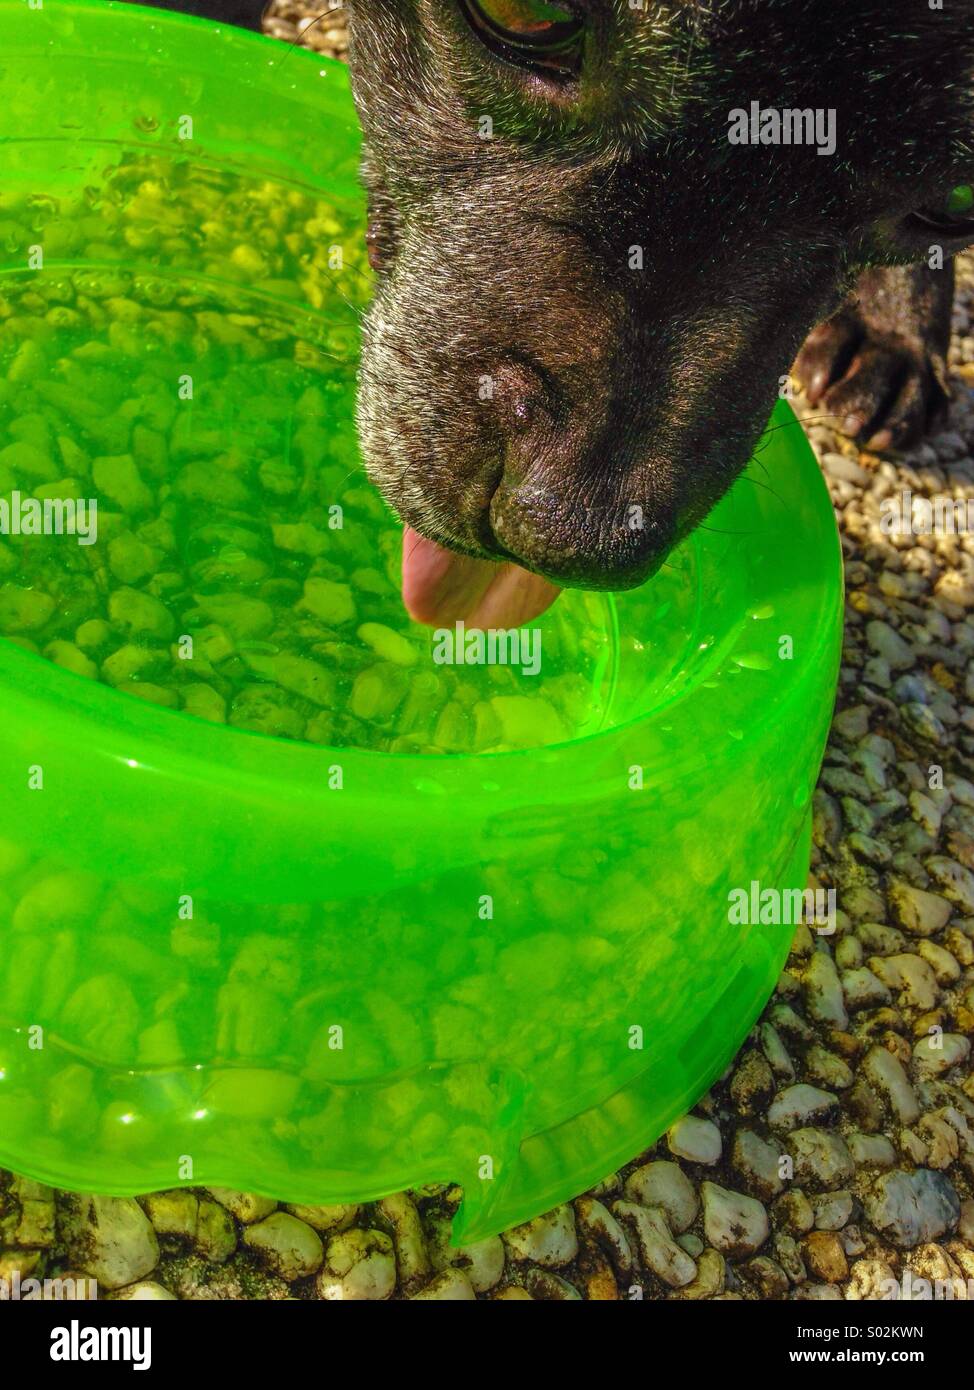 Un chien l'eau potable à partir d'un bol vert Banque D'Images